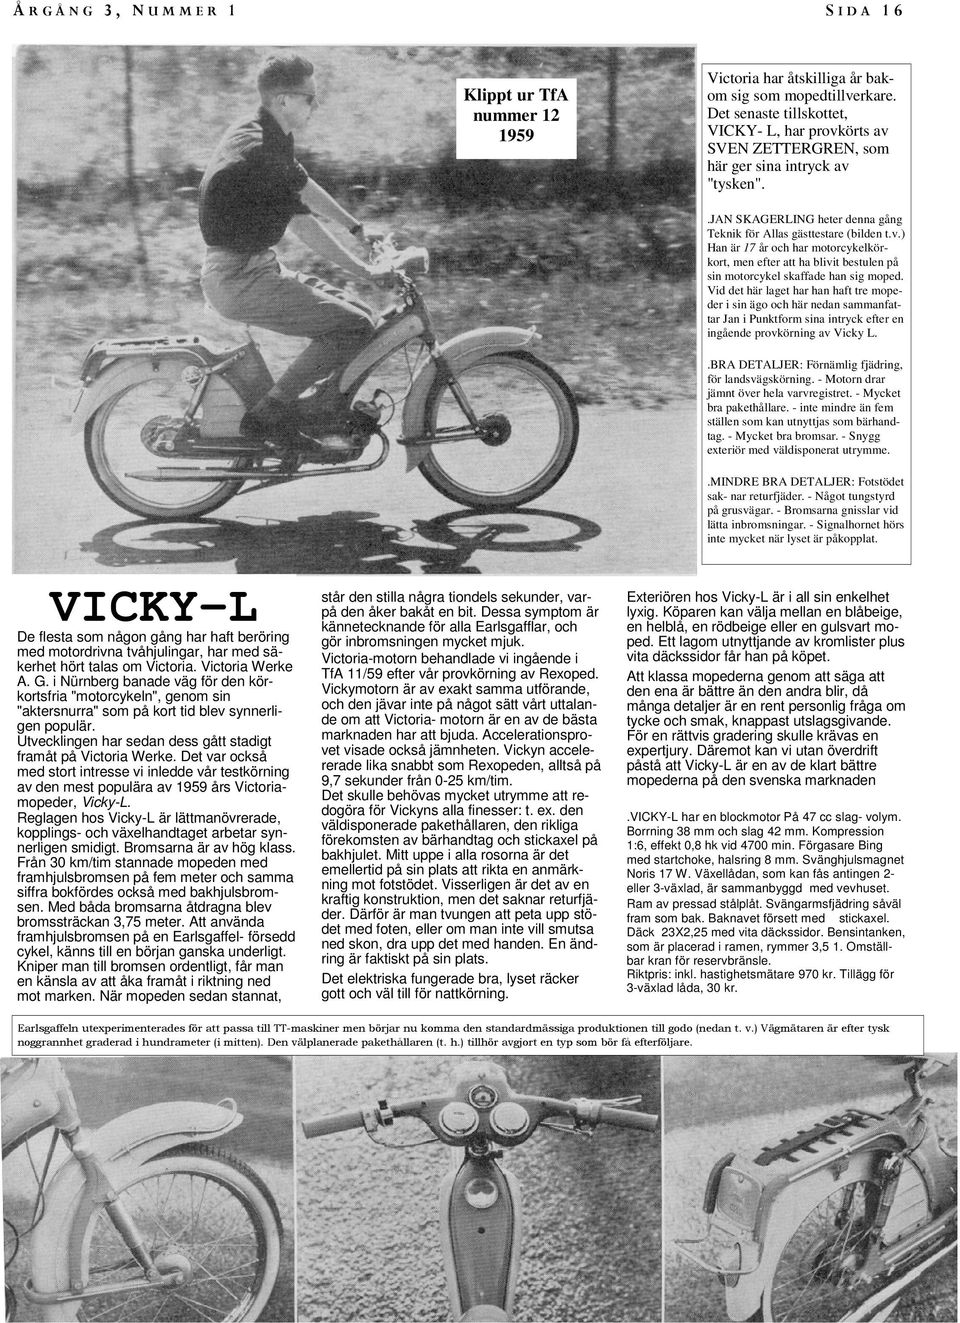 Vid det här laget har han haft tre mopeder i sin ägo och här nedan sammanfattar Jan i Punktform sina intryck efter en ingående provkörning av Vicky L.